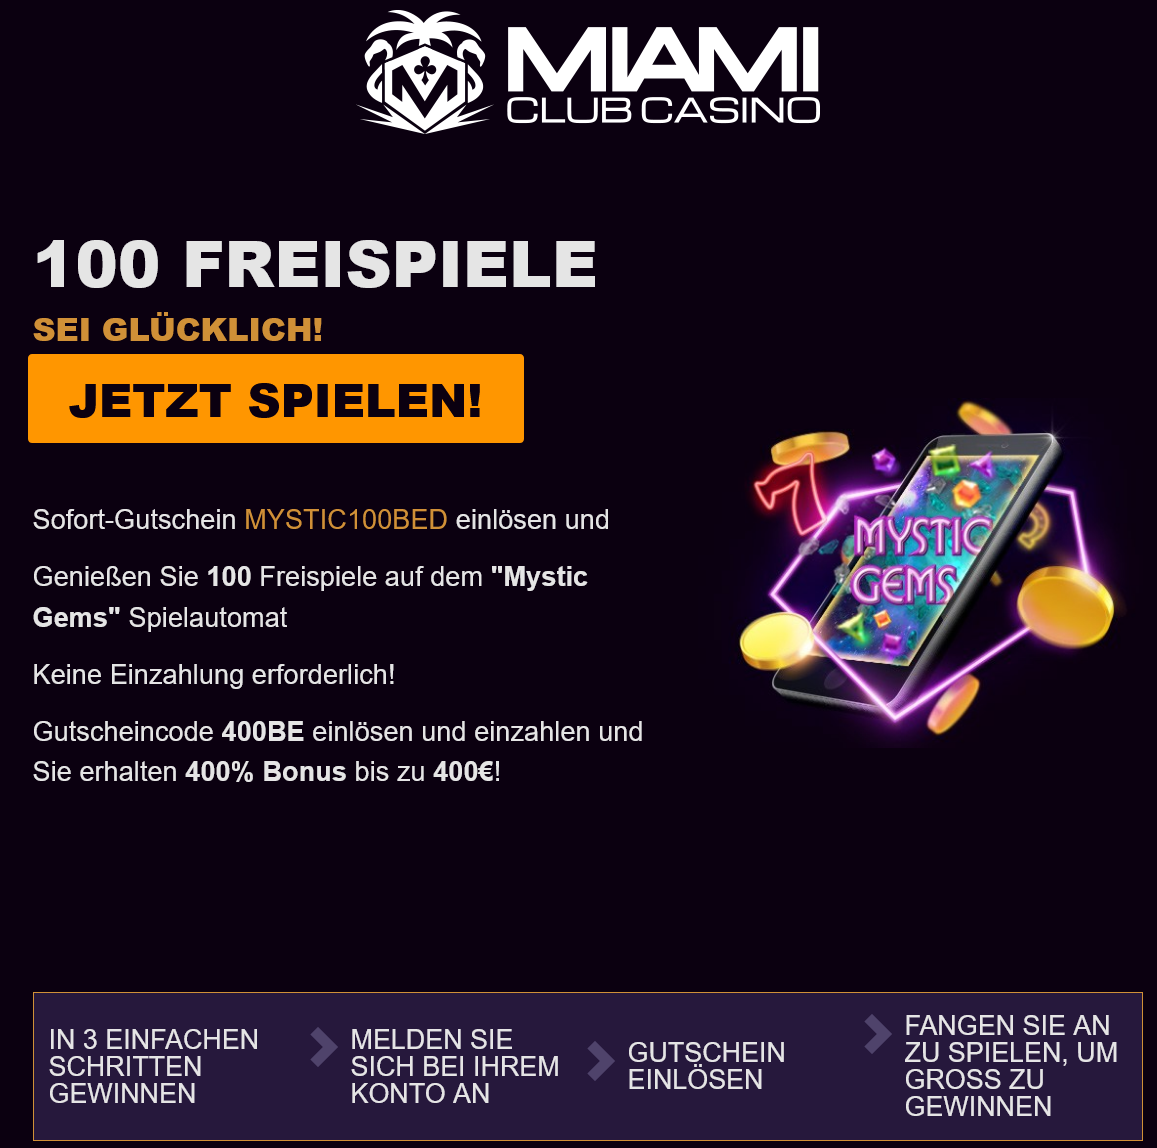 Miami
                                                          Club 100 Free
                                                          Spins